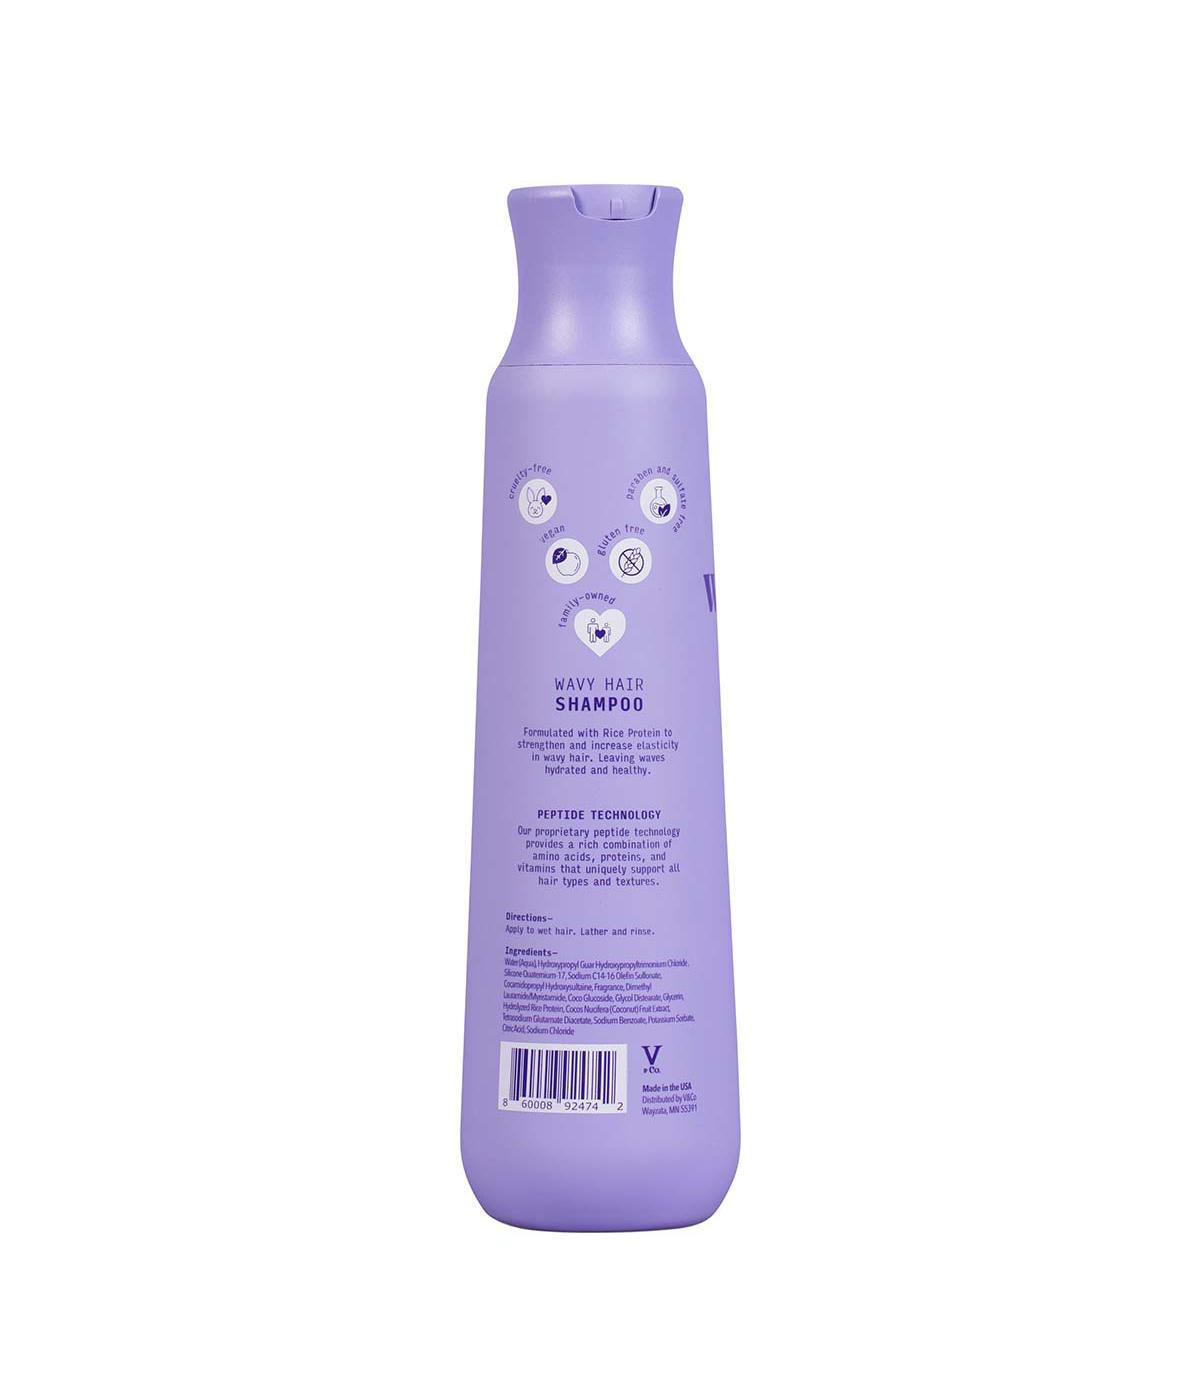 V&Co. Wavy Hair Shampoo; image 2 of 2